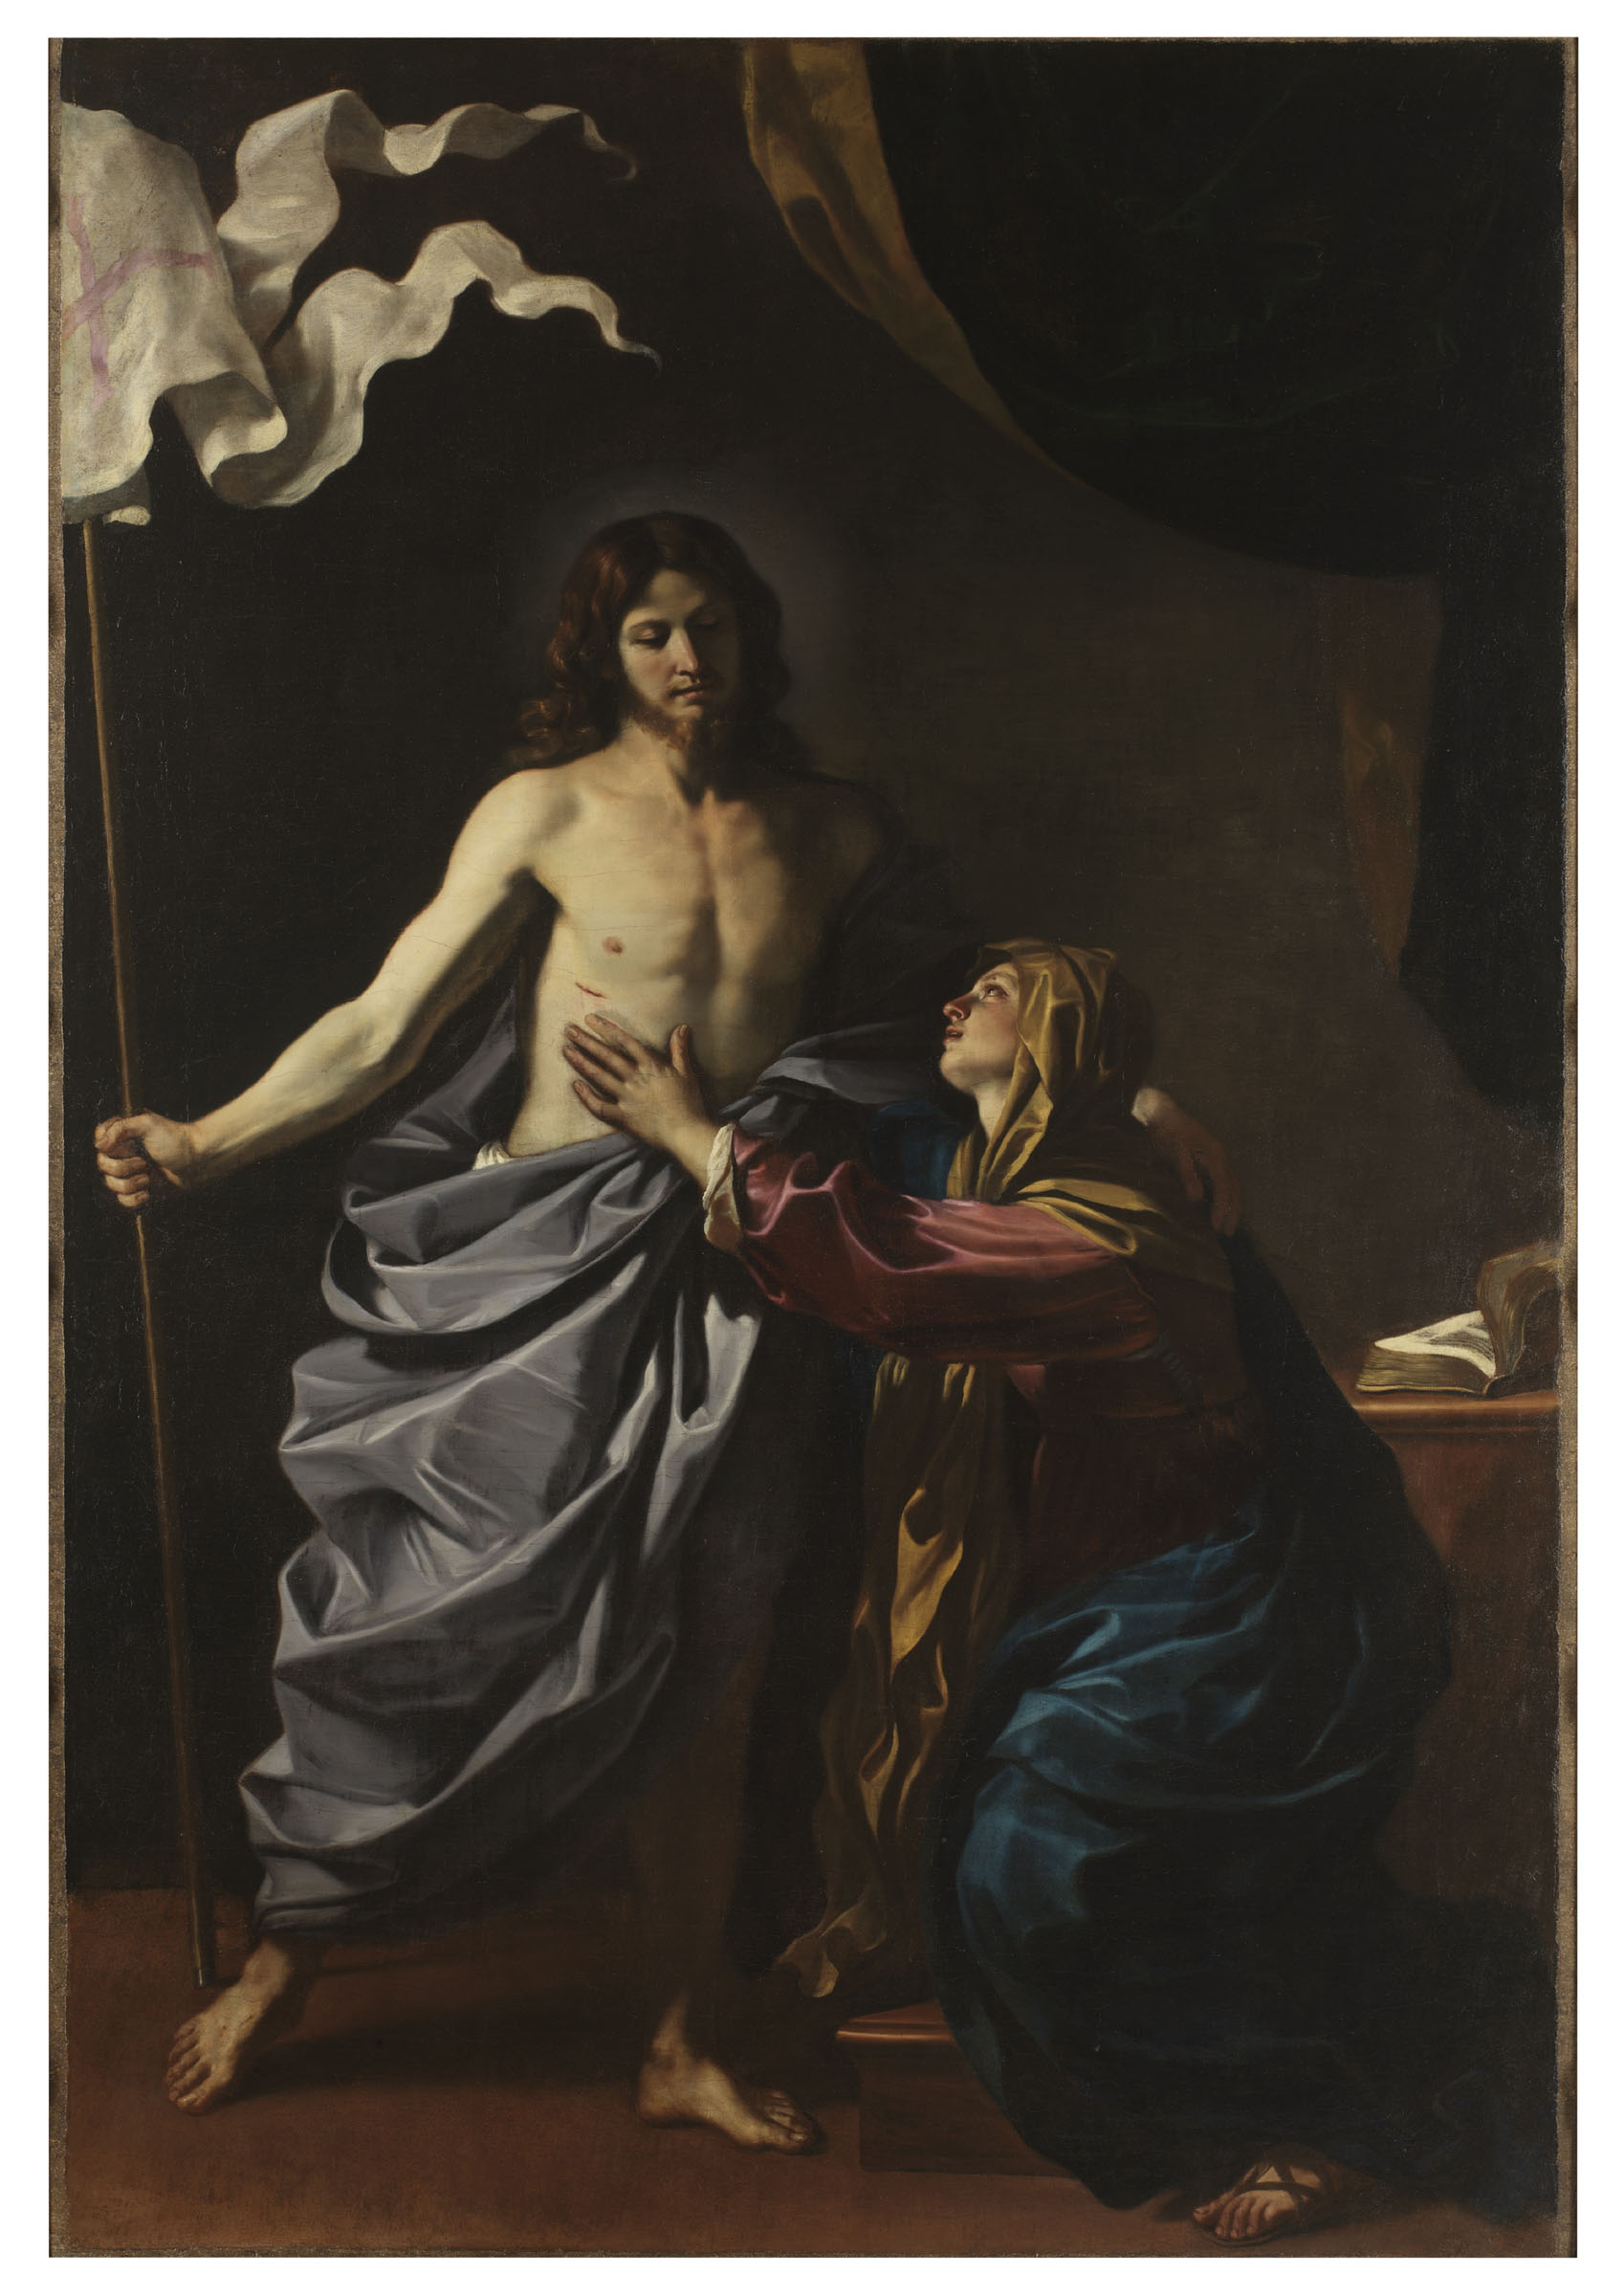 Guercino, Cristo risorto appare alla Madre (1628-1630; olio su tela, 260 Ã— 179,5 cm; Cento, Pinacoteca Civica)
